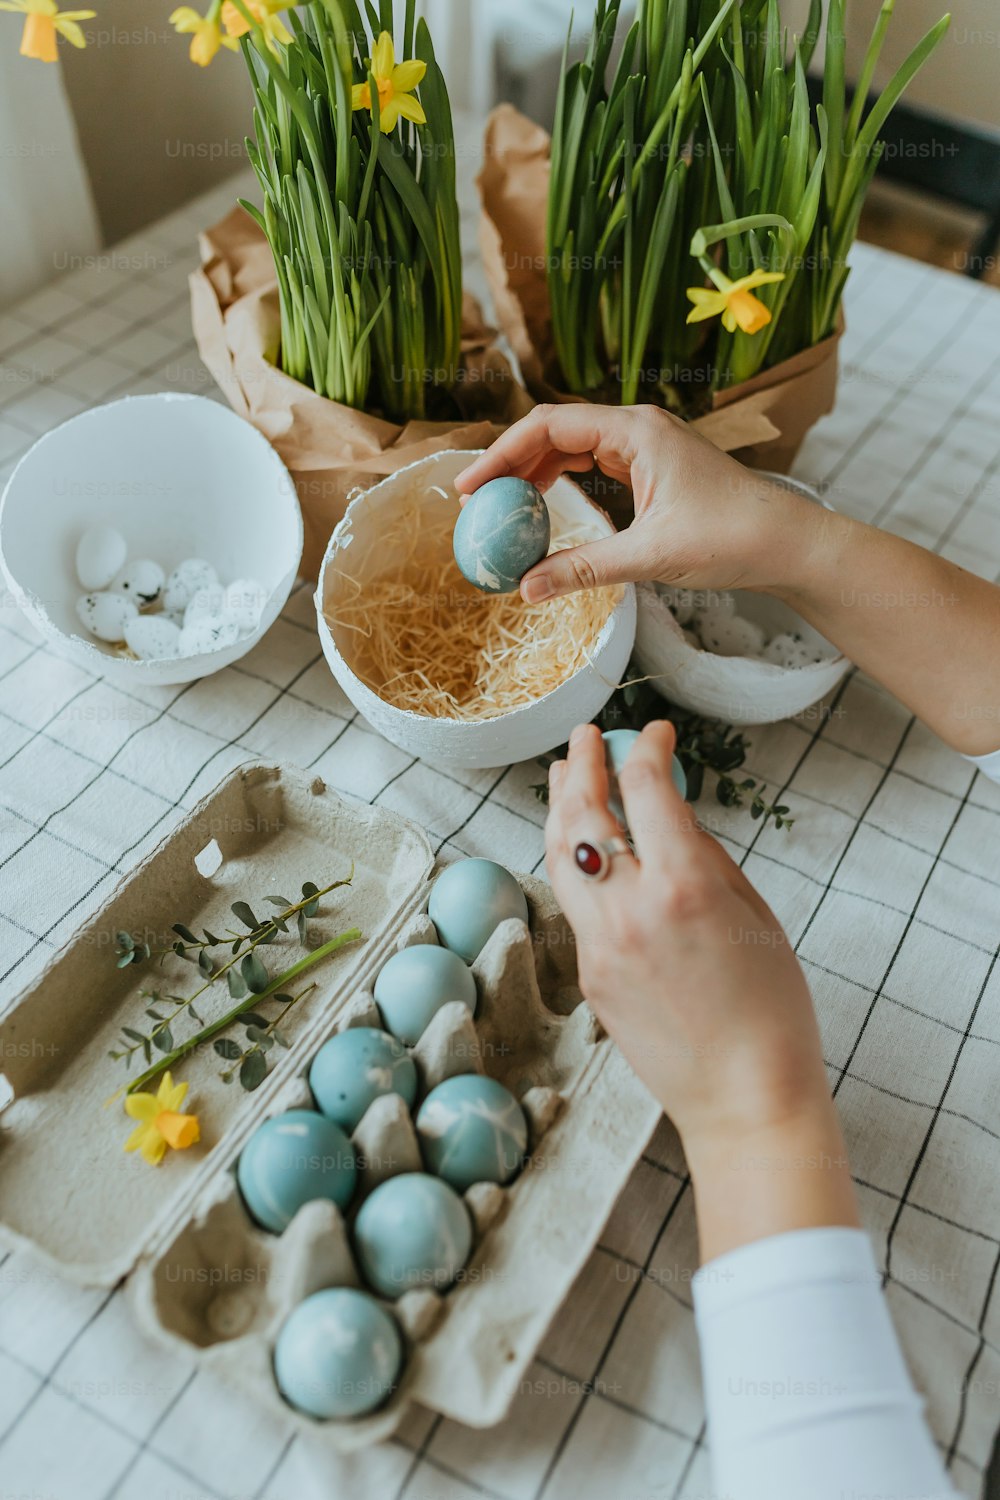 Eine Person dekoriert einige Eier auf einem Tisch